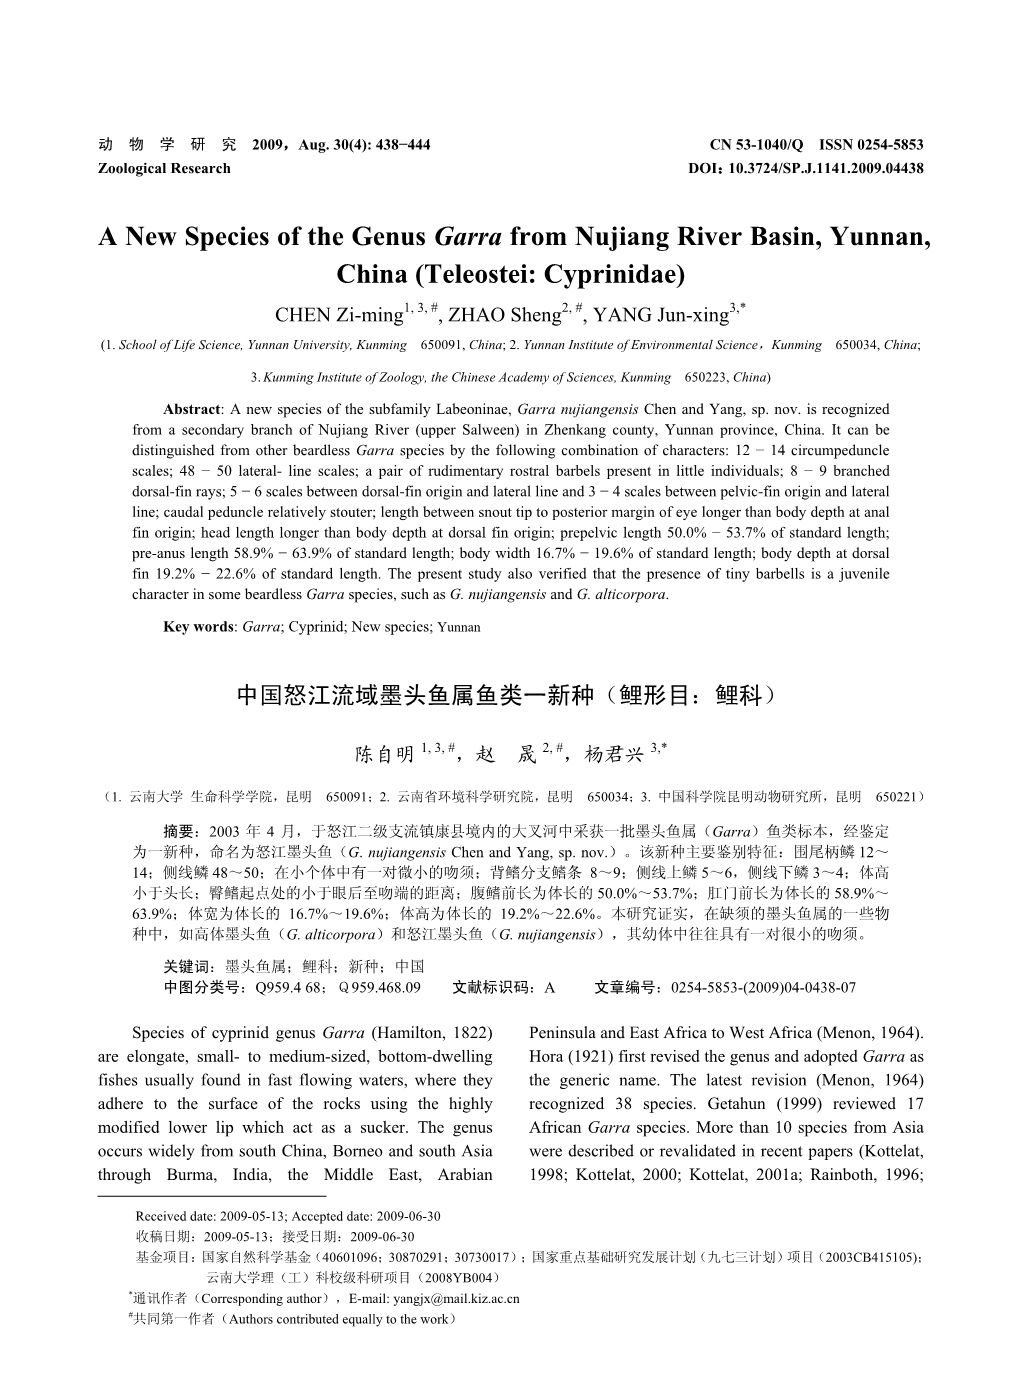 A New Species of the Genus Garra from Nujiang River Basin, Yunnan, China (Teleostei: Cyprinidae) CHEN Zi-Ming1, 3, #, ZHAO Sheng2, #, YANG Jun-Xing3,* (1